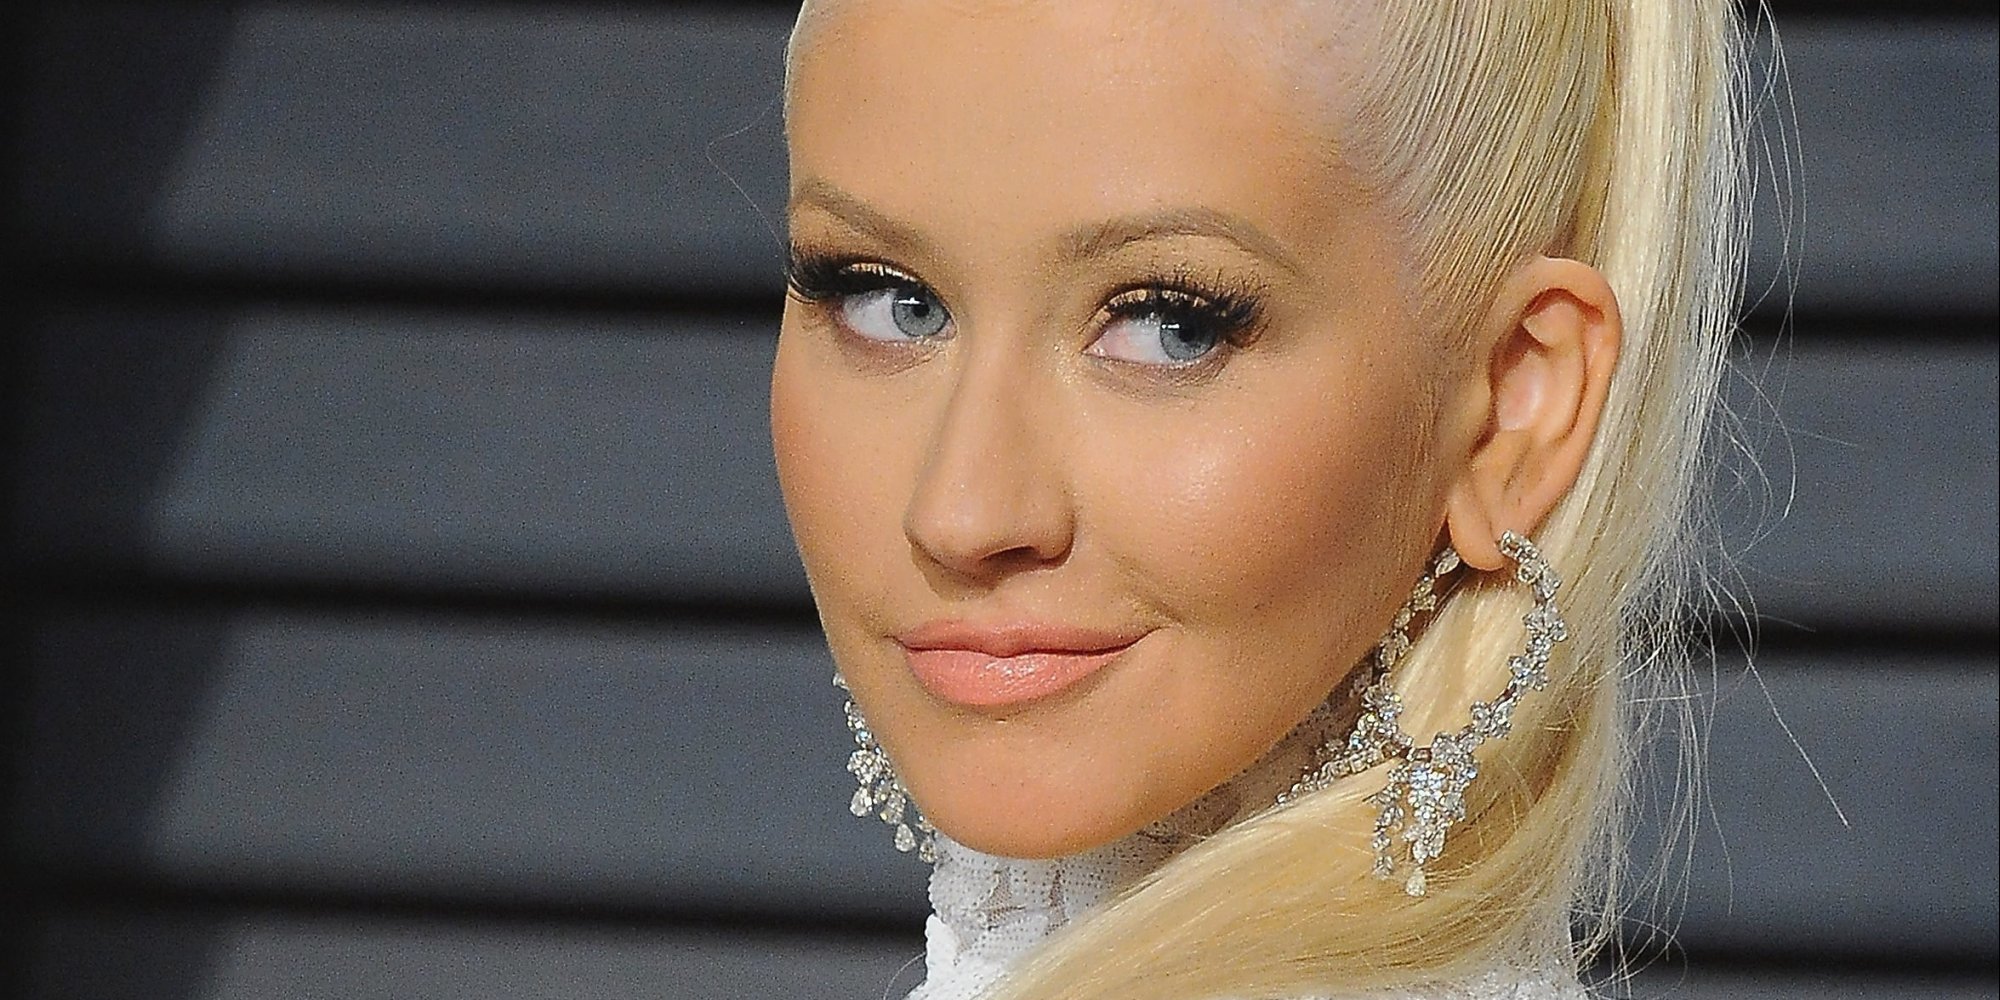 Christina Aguilera Publica Selfie En La Que Aparece Sin Bra Para Compartir Algo Más Personal 2963